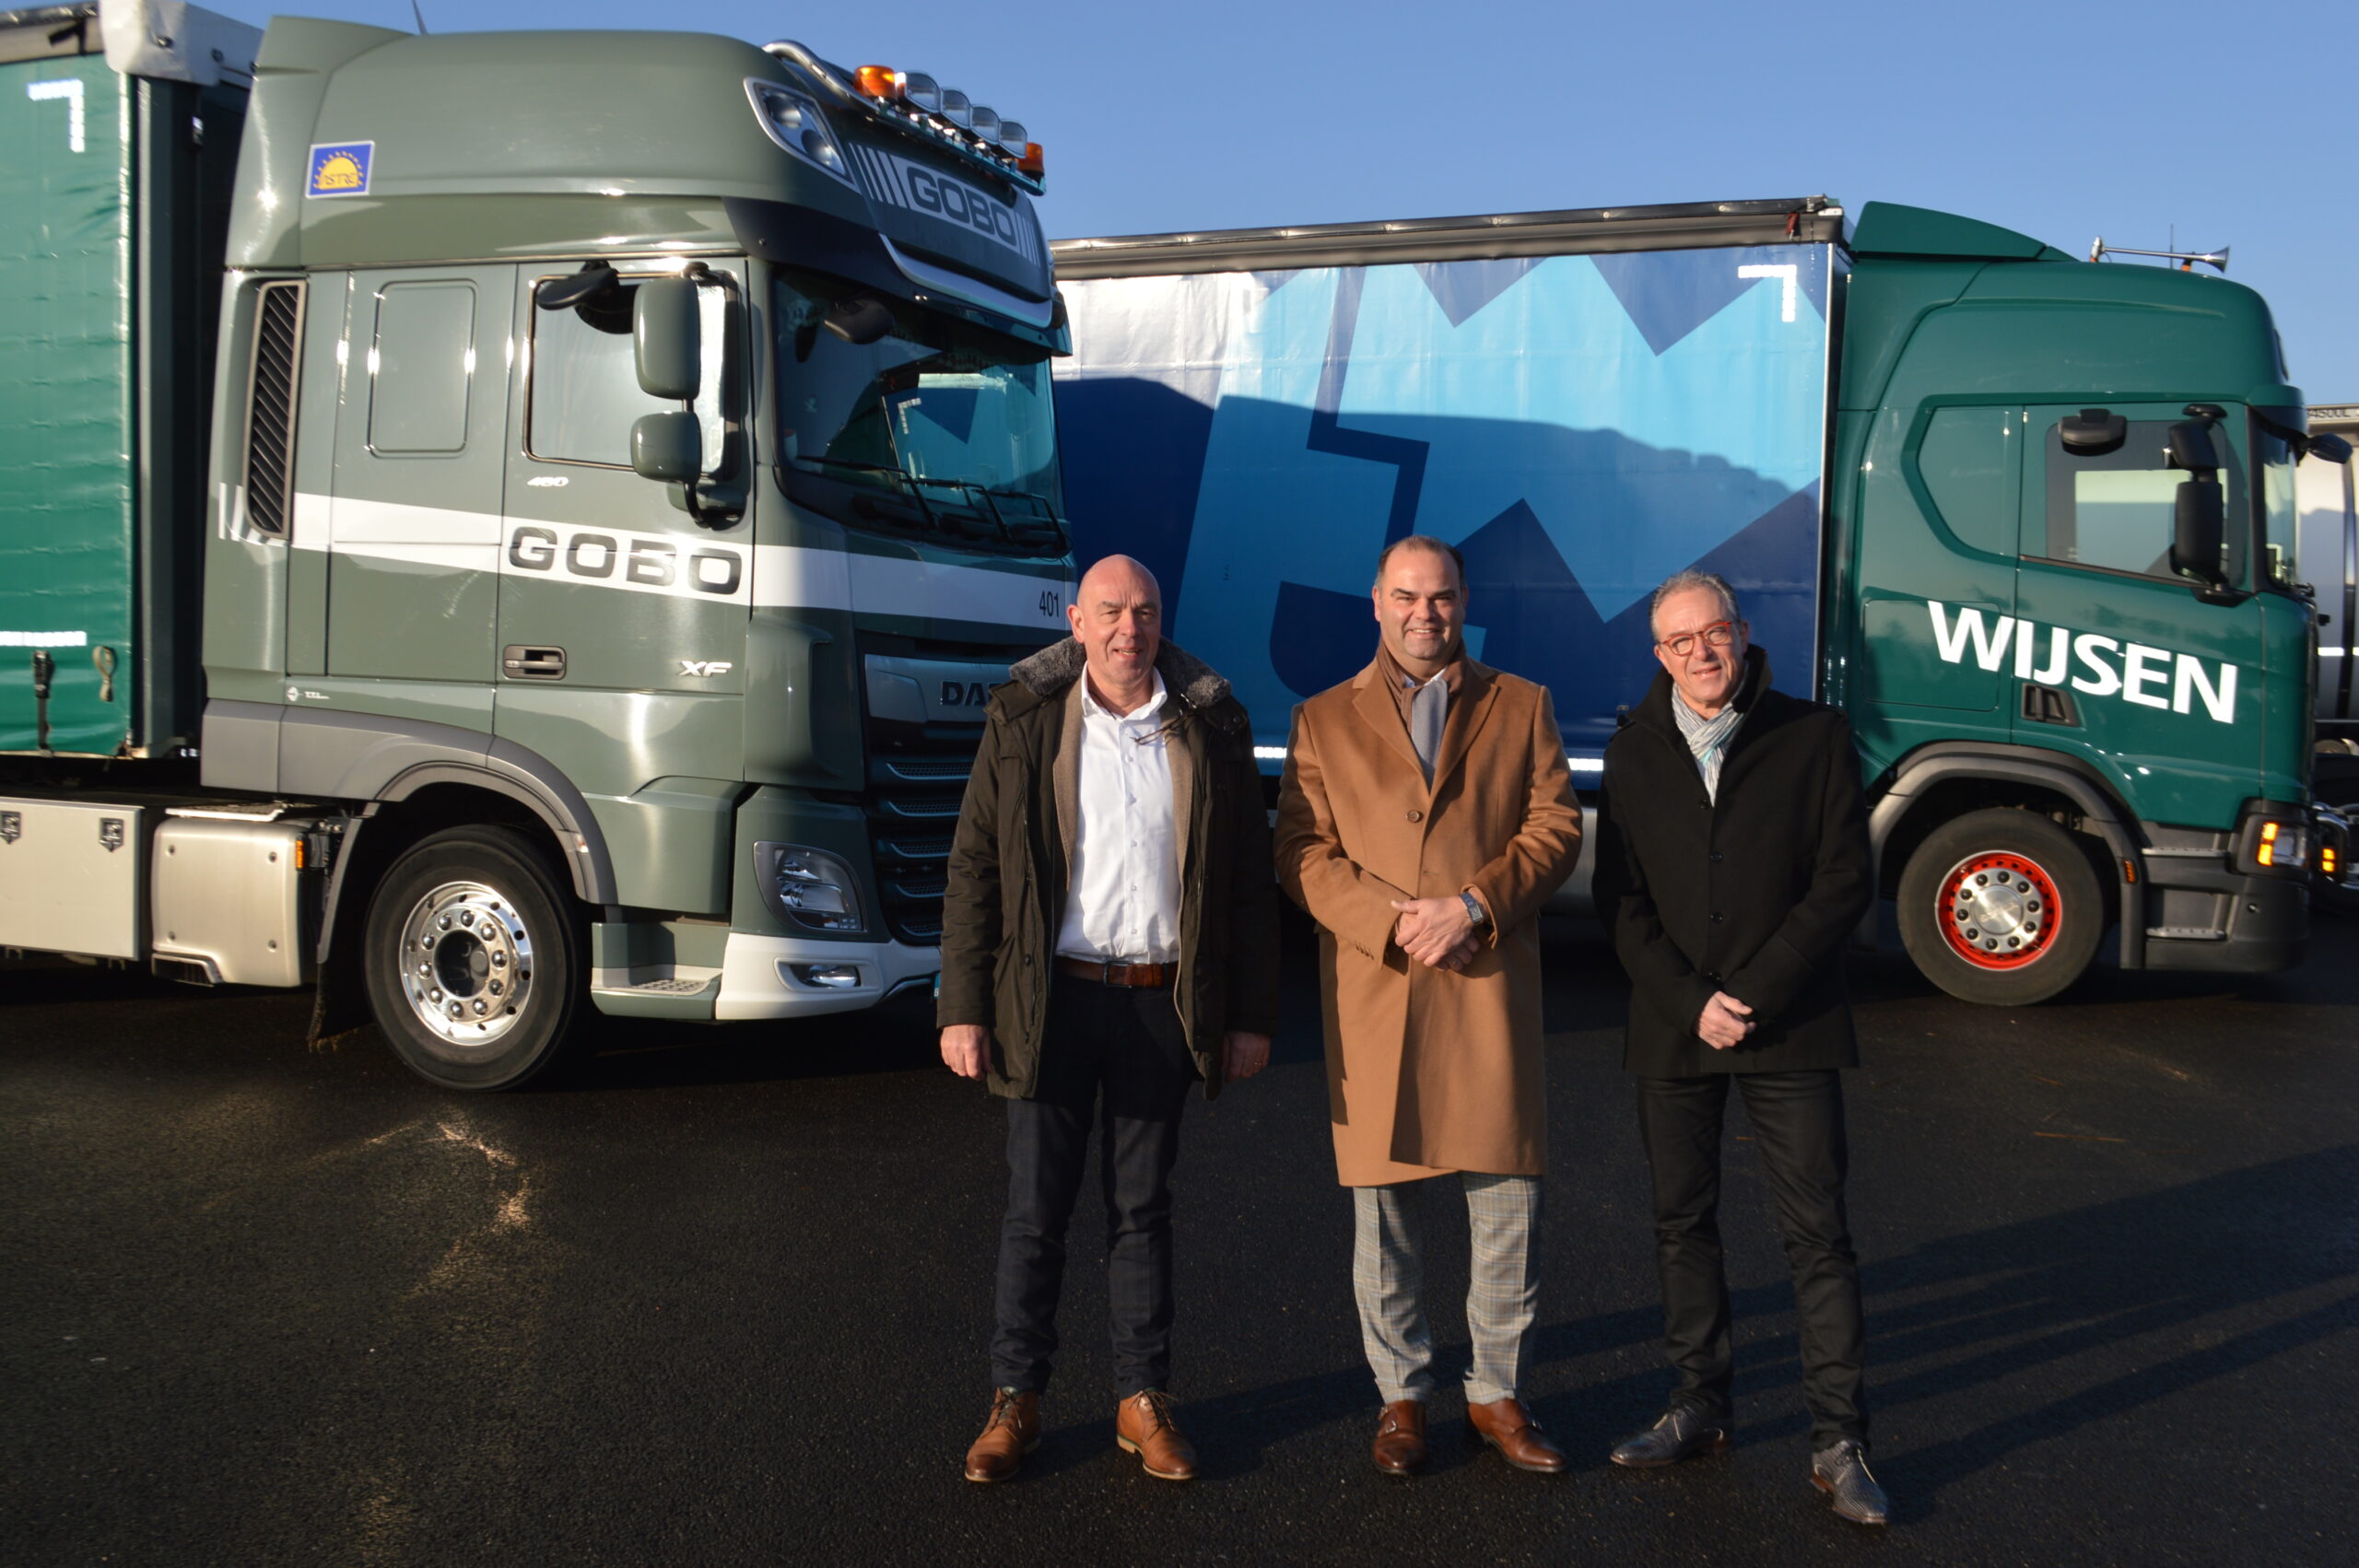 GOBO Transport & Logistics versterkt positie door overname Wijsen Logistics